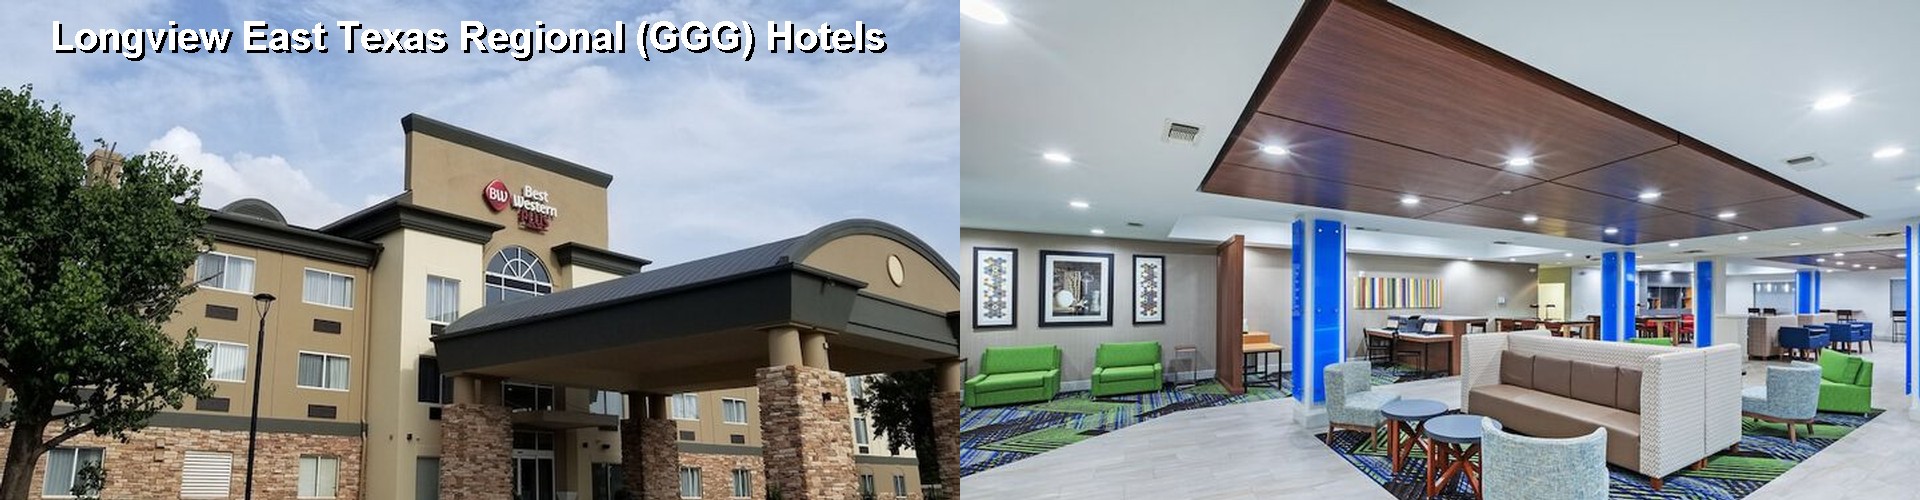 4 Best Hotels near Longview East Texas Regional (GGG)